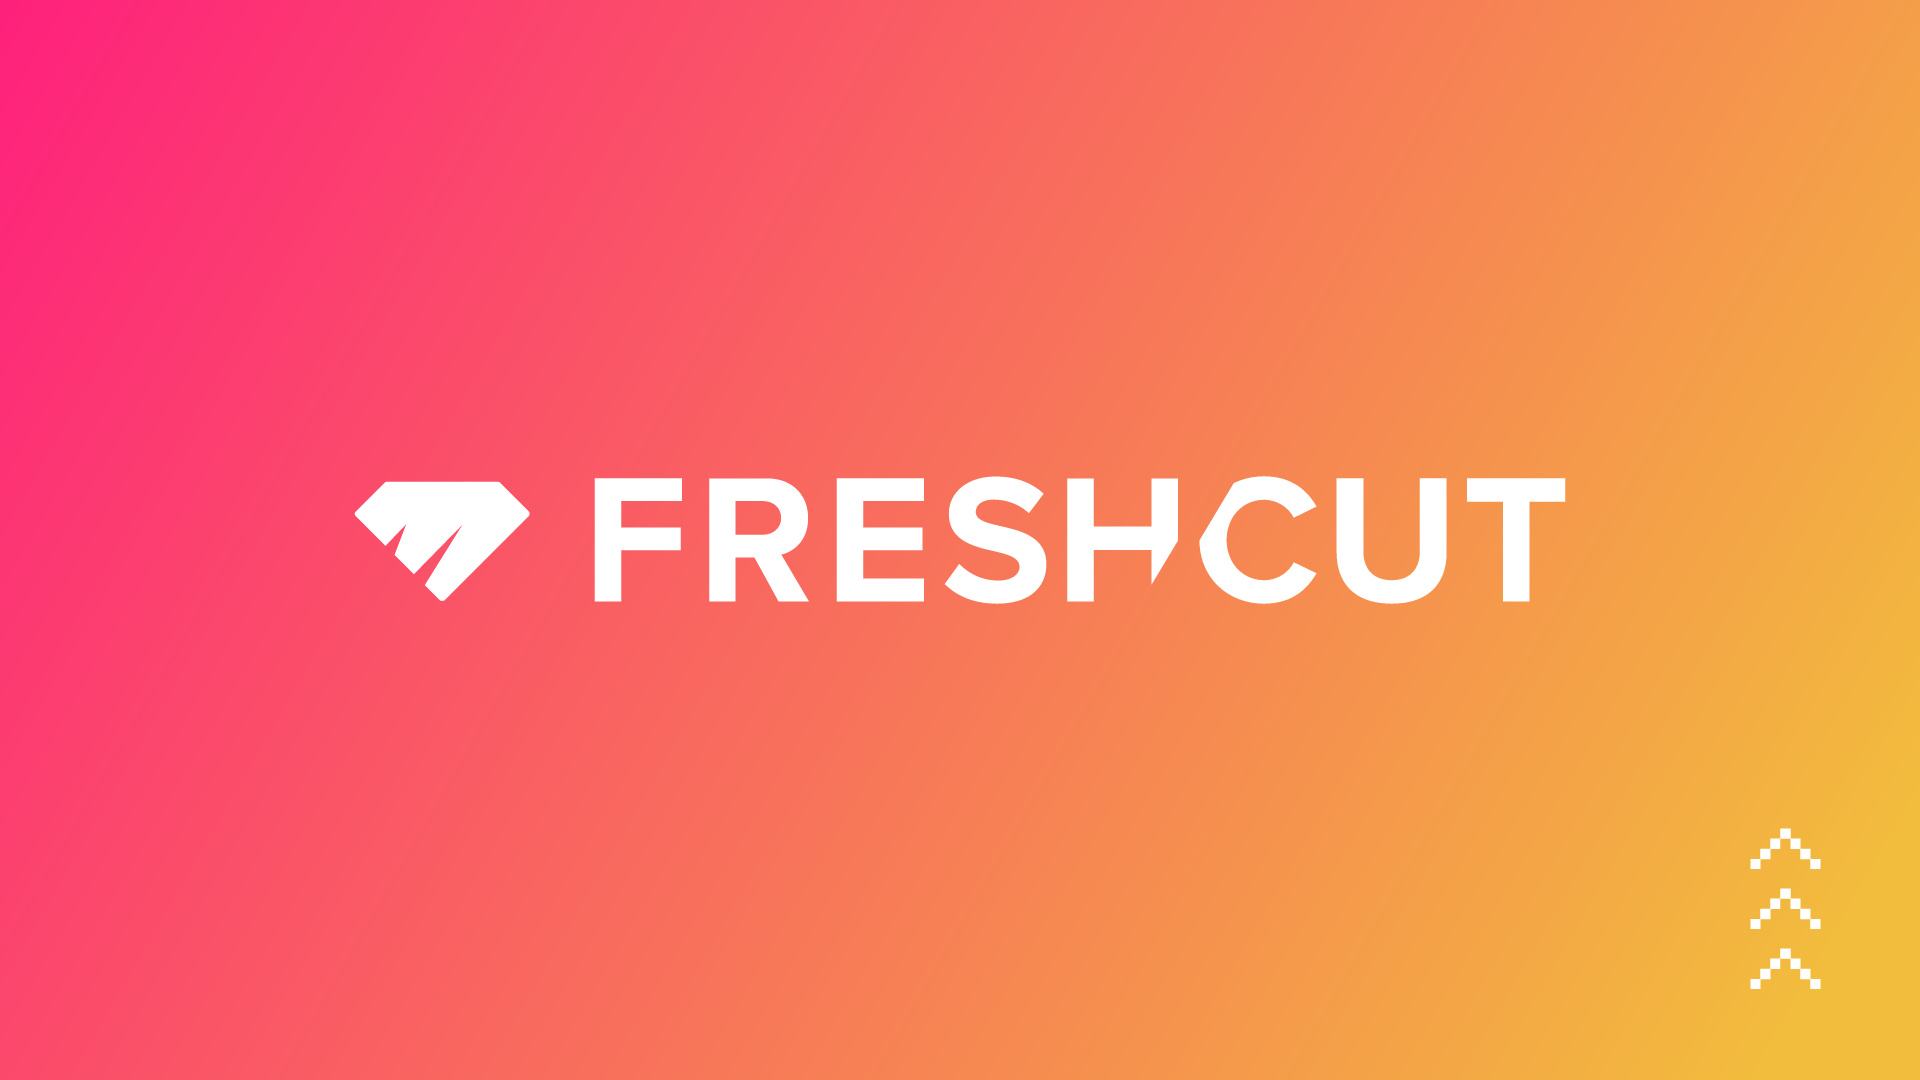 What is FreshCut?